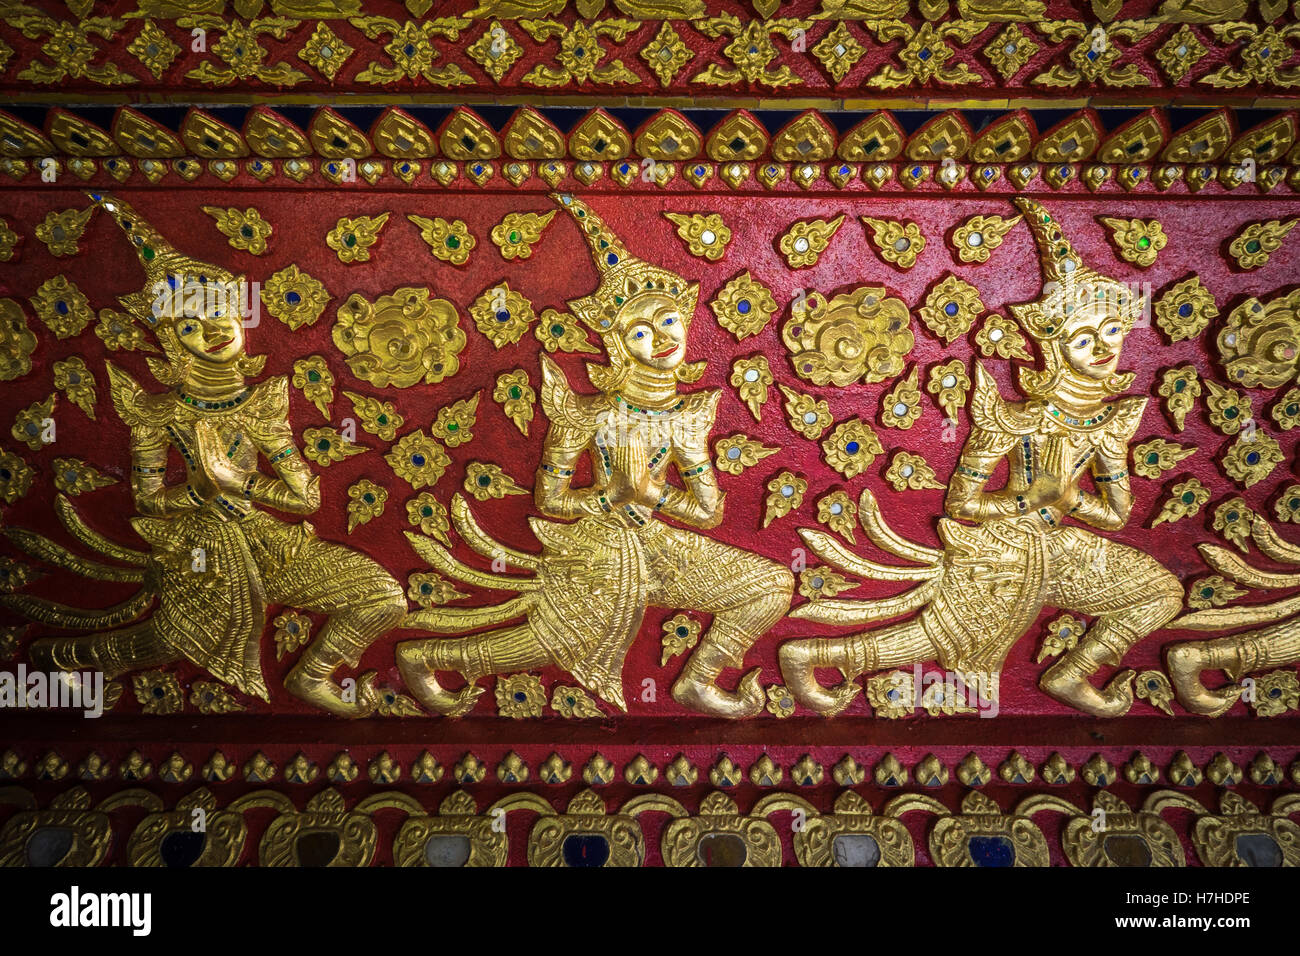 Detaillierten gemalte Kunstwerke im buddhistischen Tempel Wat Suan Dok in Chiang Mai, Nordthailand. Stockfoto